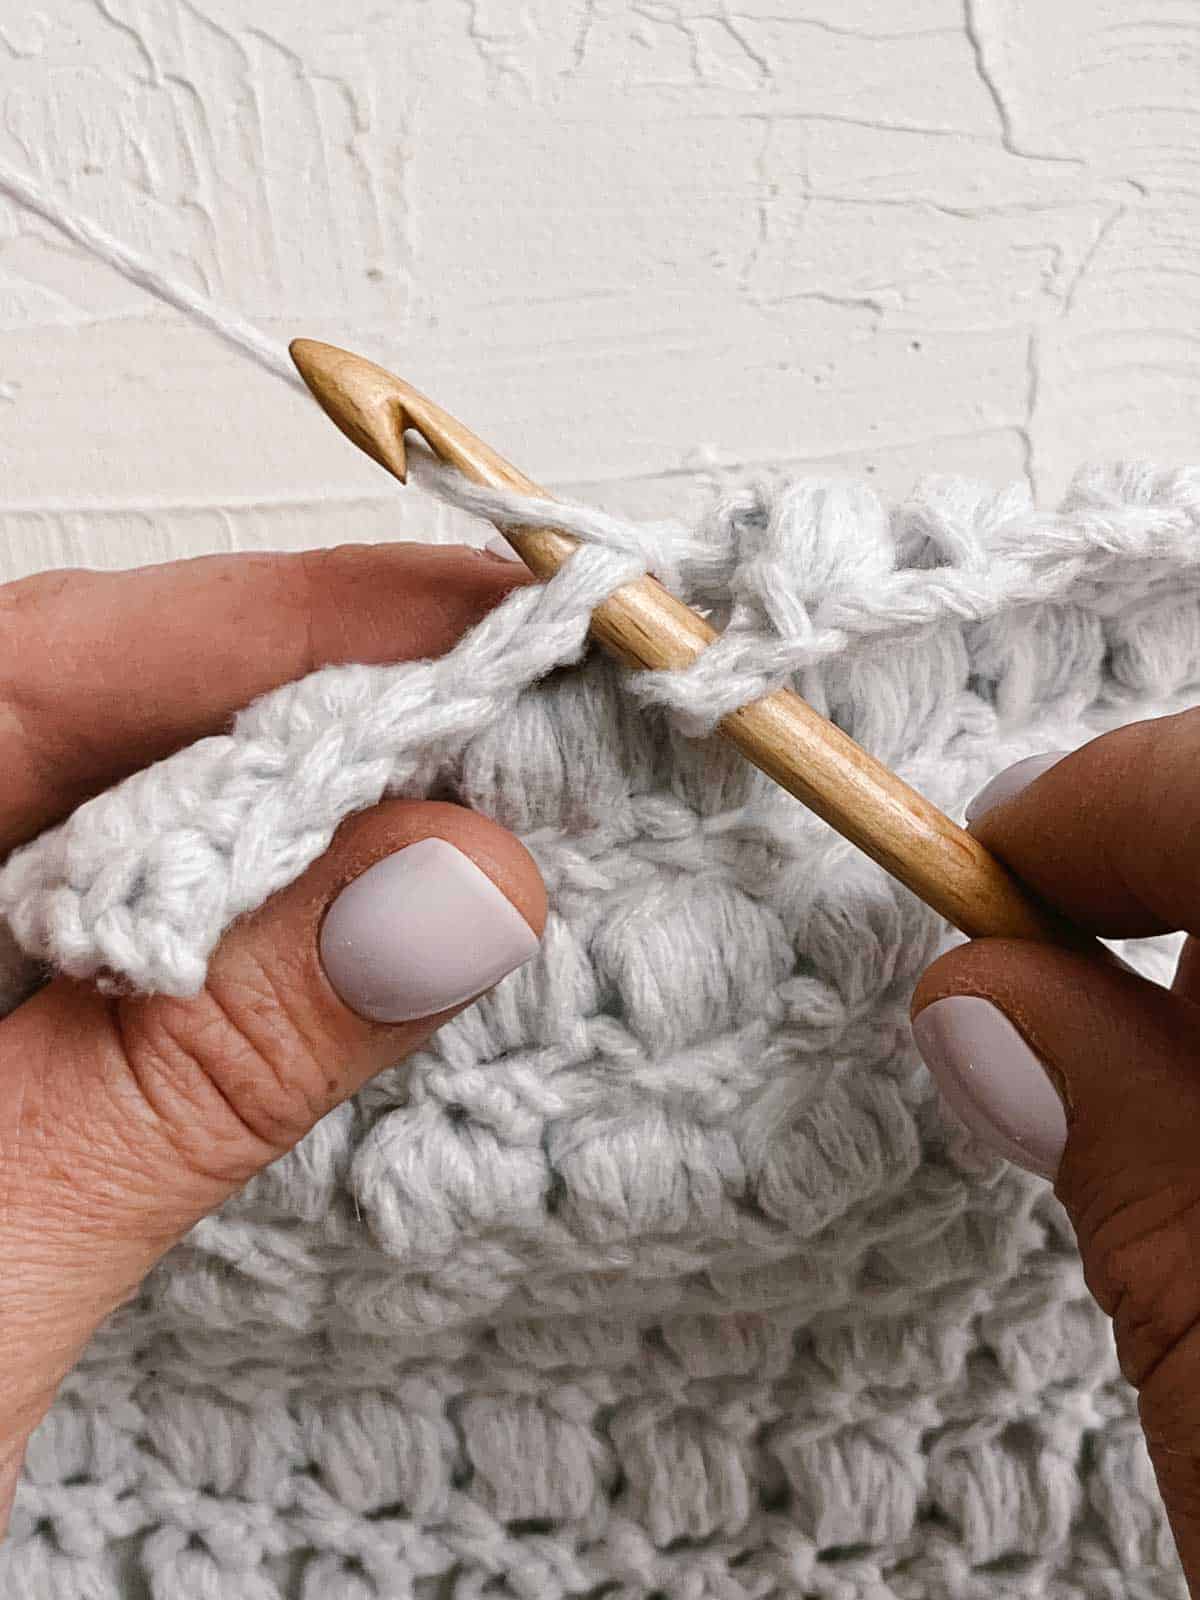 Bamboo crochet hook pulling grey yarn through a stitch.